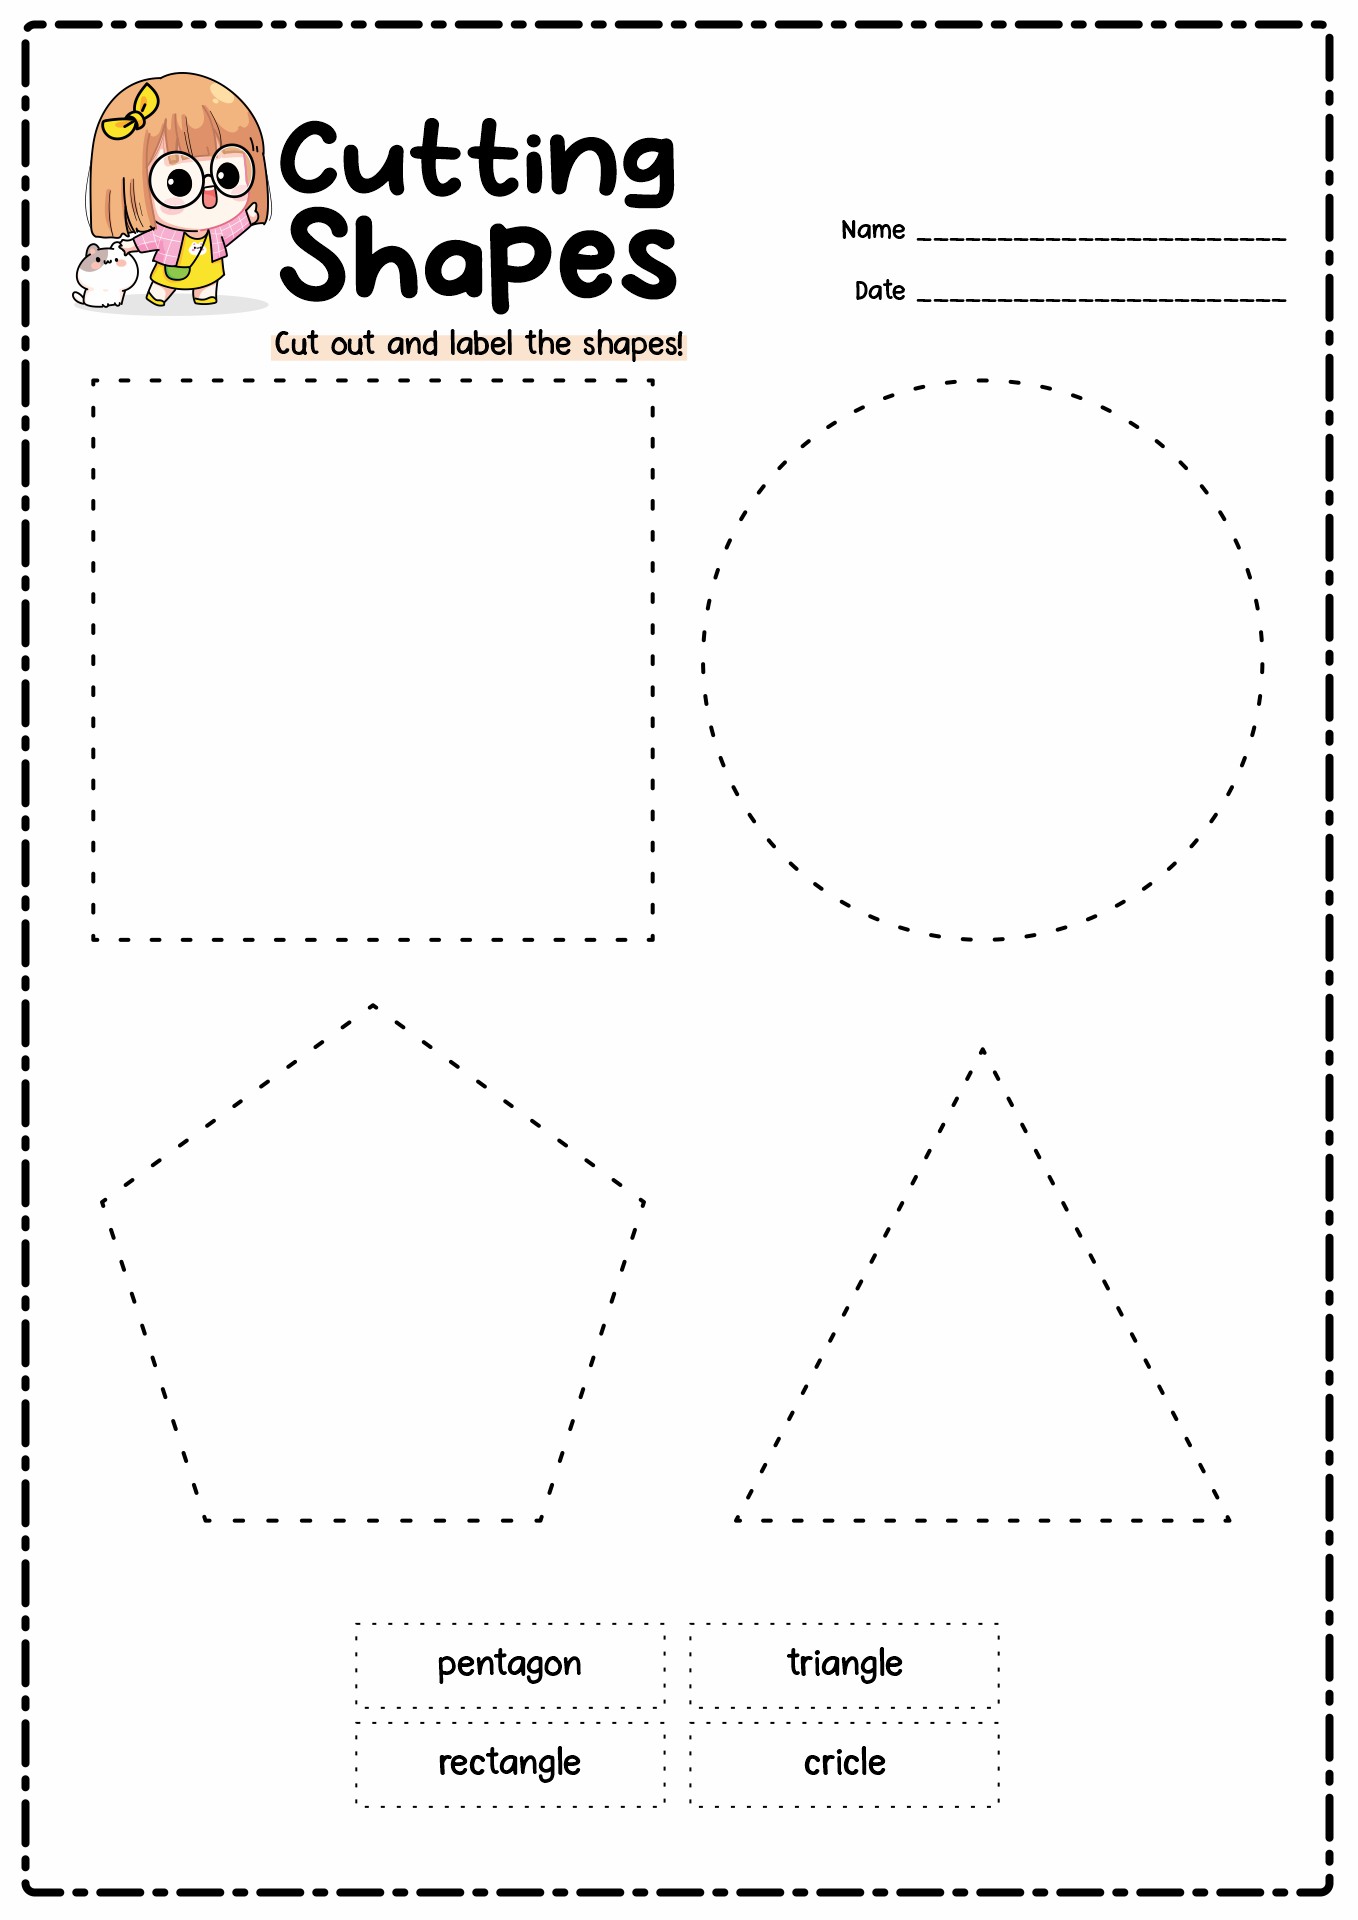 Cut Out Shape Kindergarten Worksheets Image